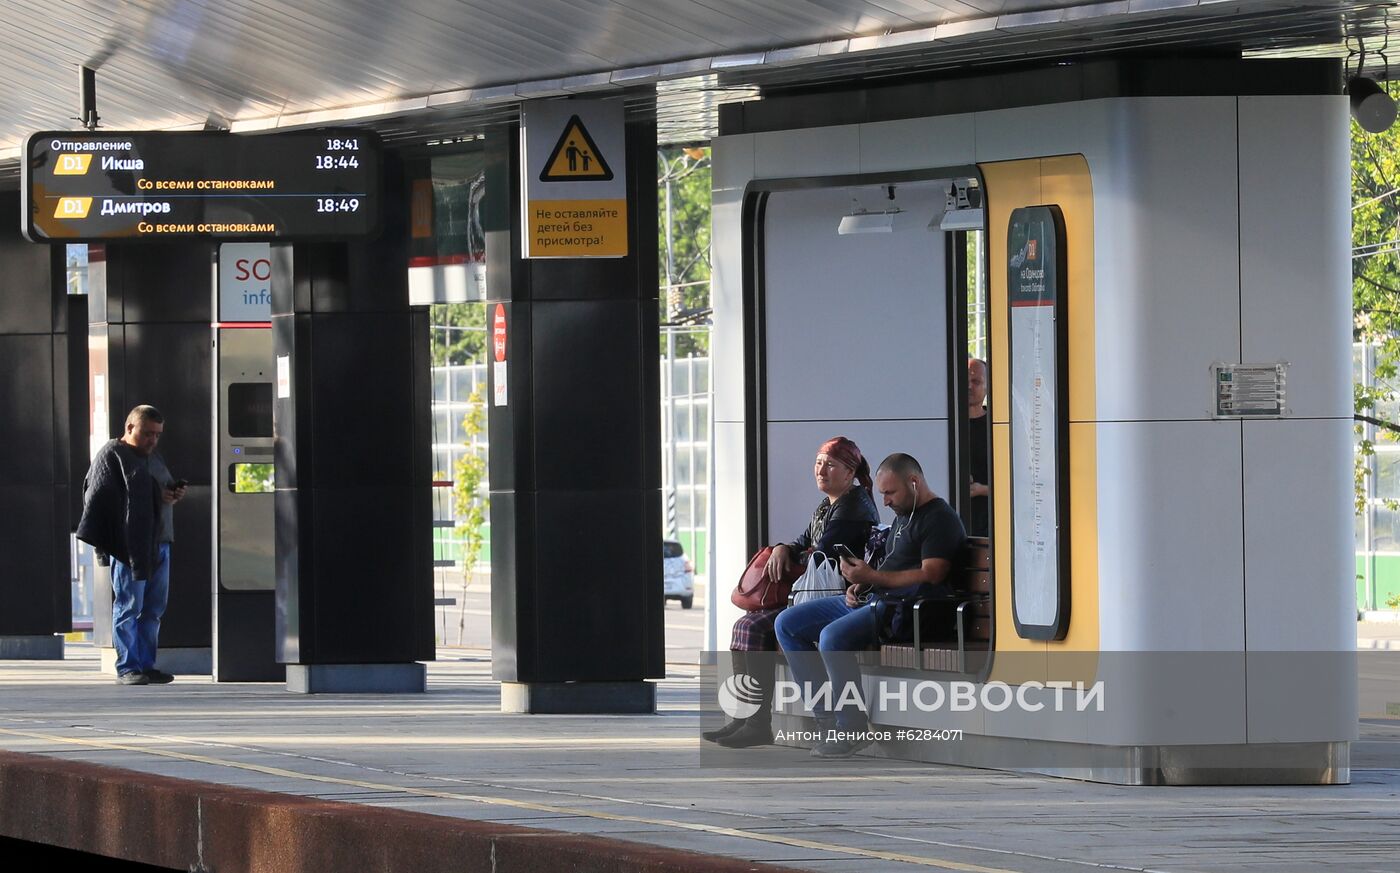 Открытие станции Новодачная МЦД-1 после реконструкции